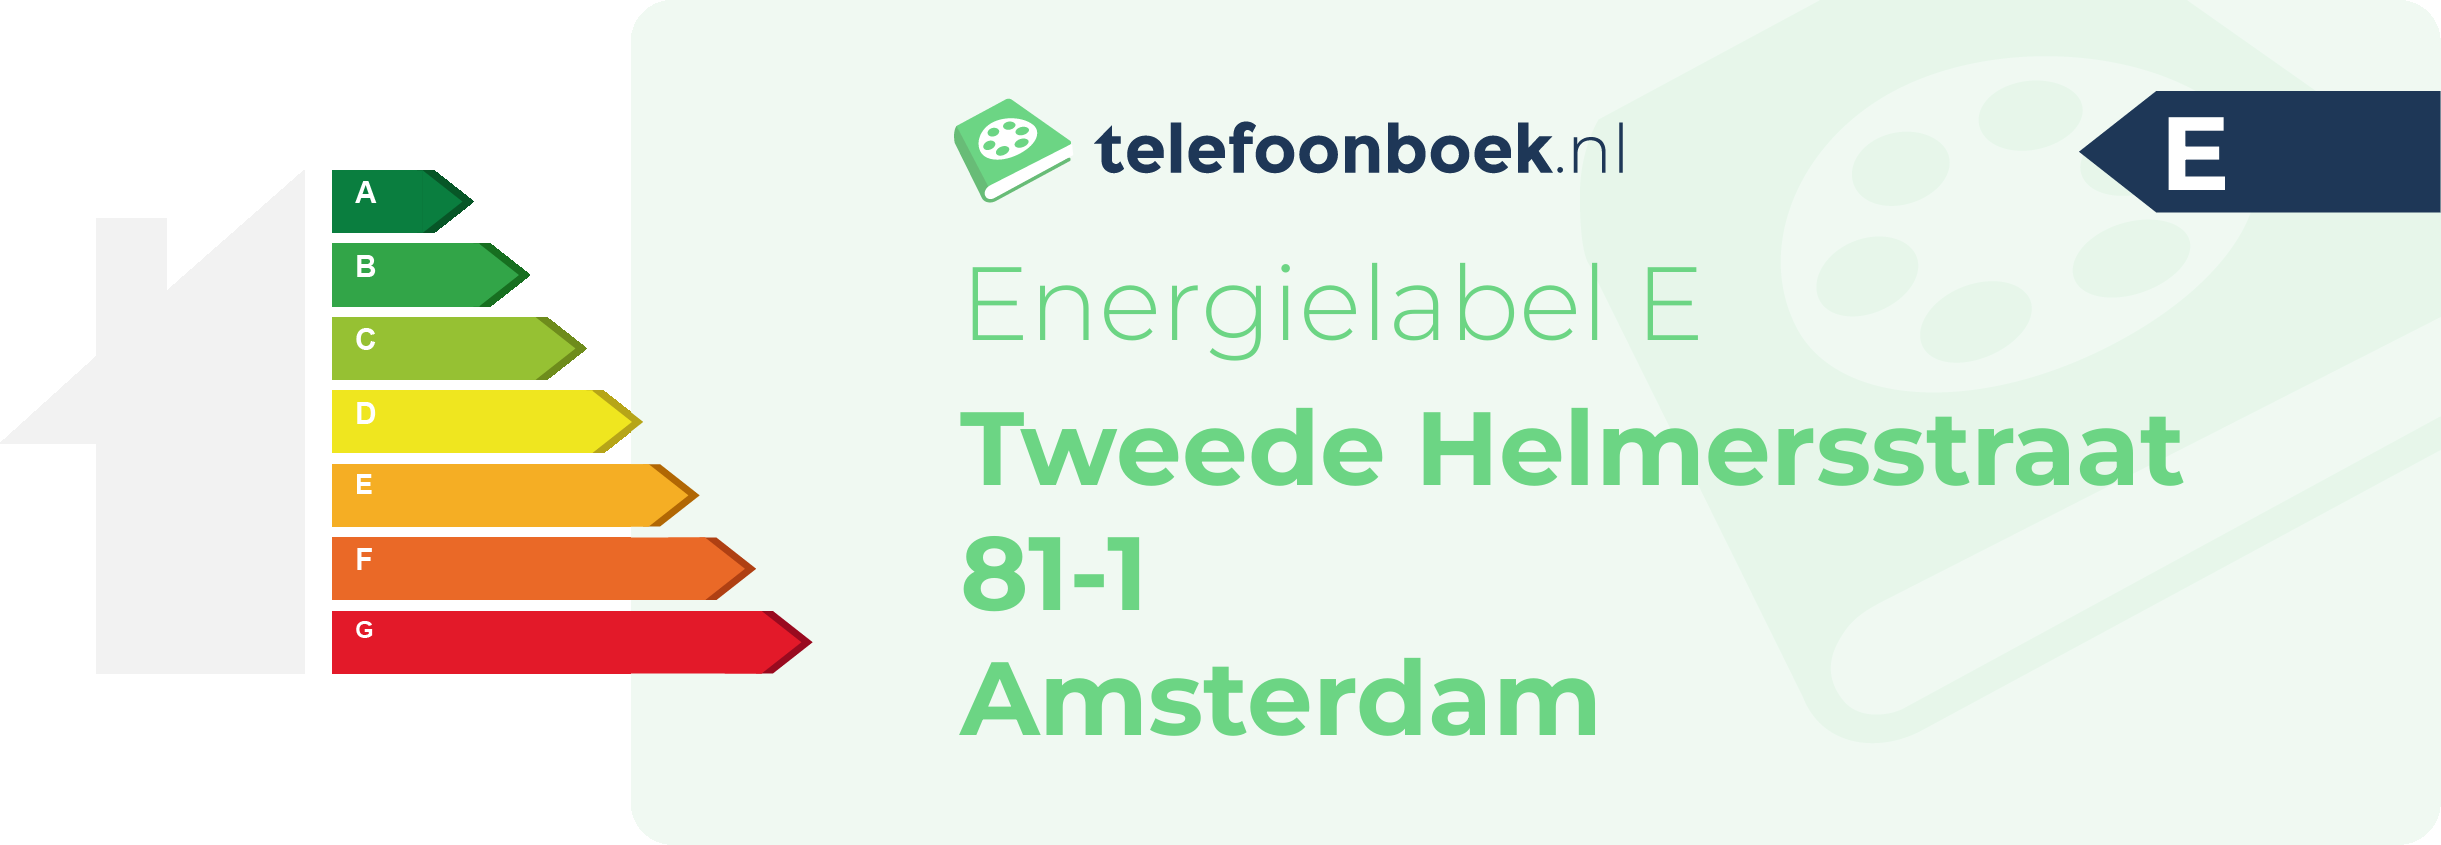 Energielabel Tweede Helmersstraat 81-1 Amsterdam